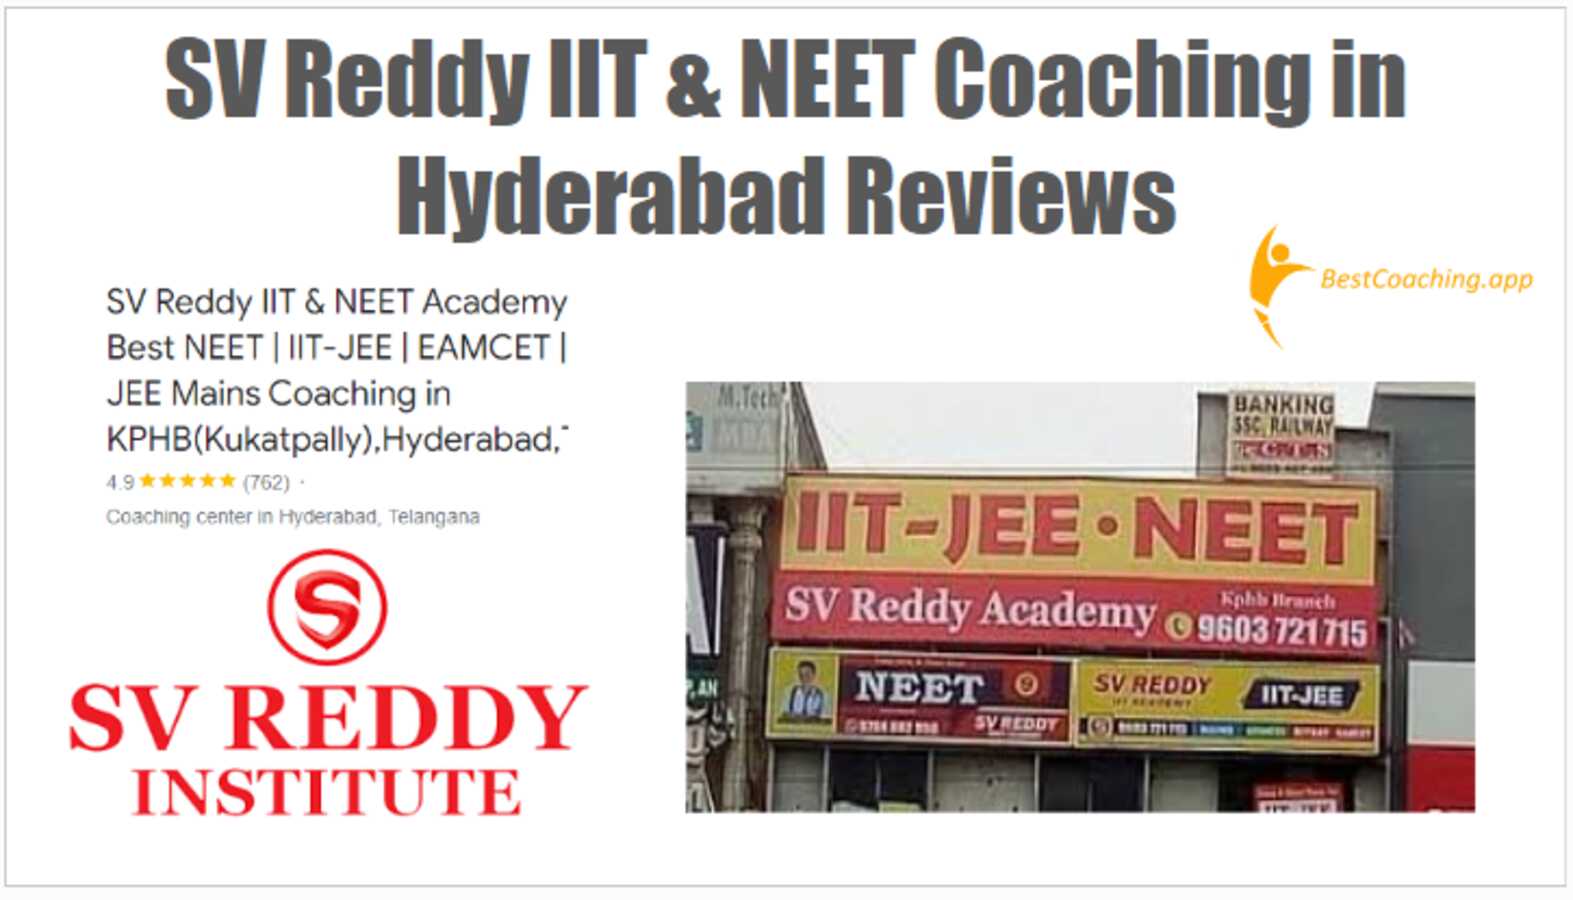 SV Reddy IIT & NEET Coaching in Hyderabad